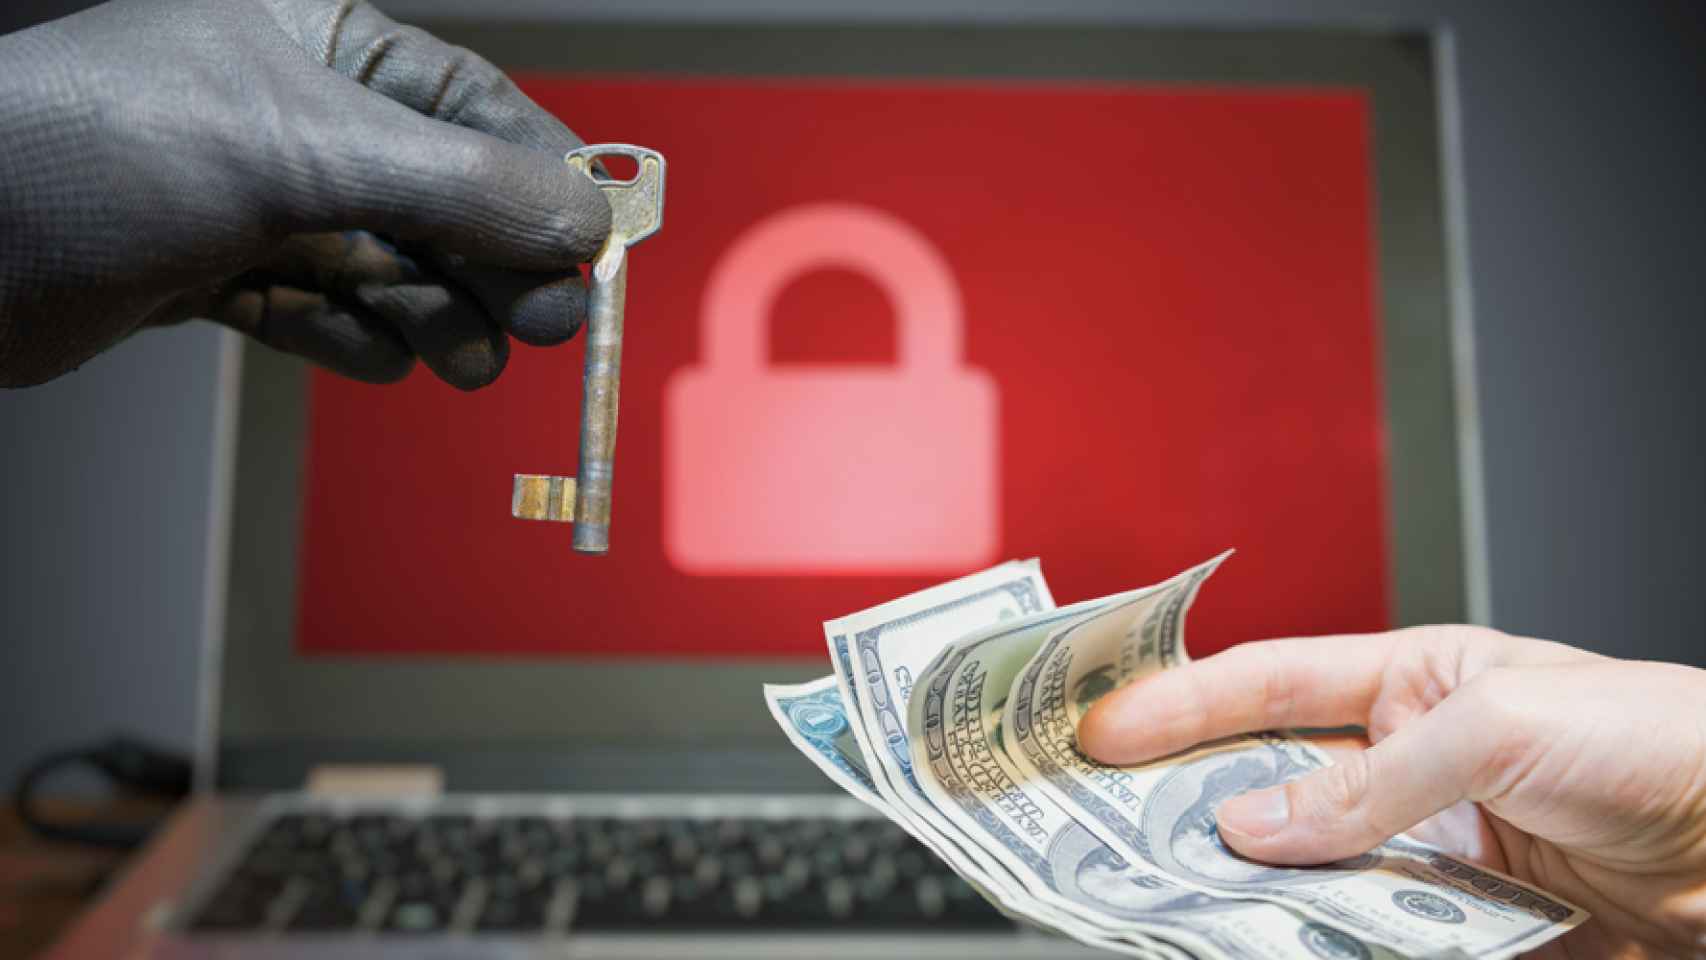 La técnica del ransomware implica pedir dinero a cambio de una clave o llave de cifrado